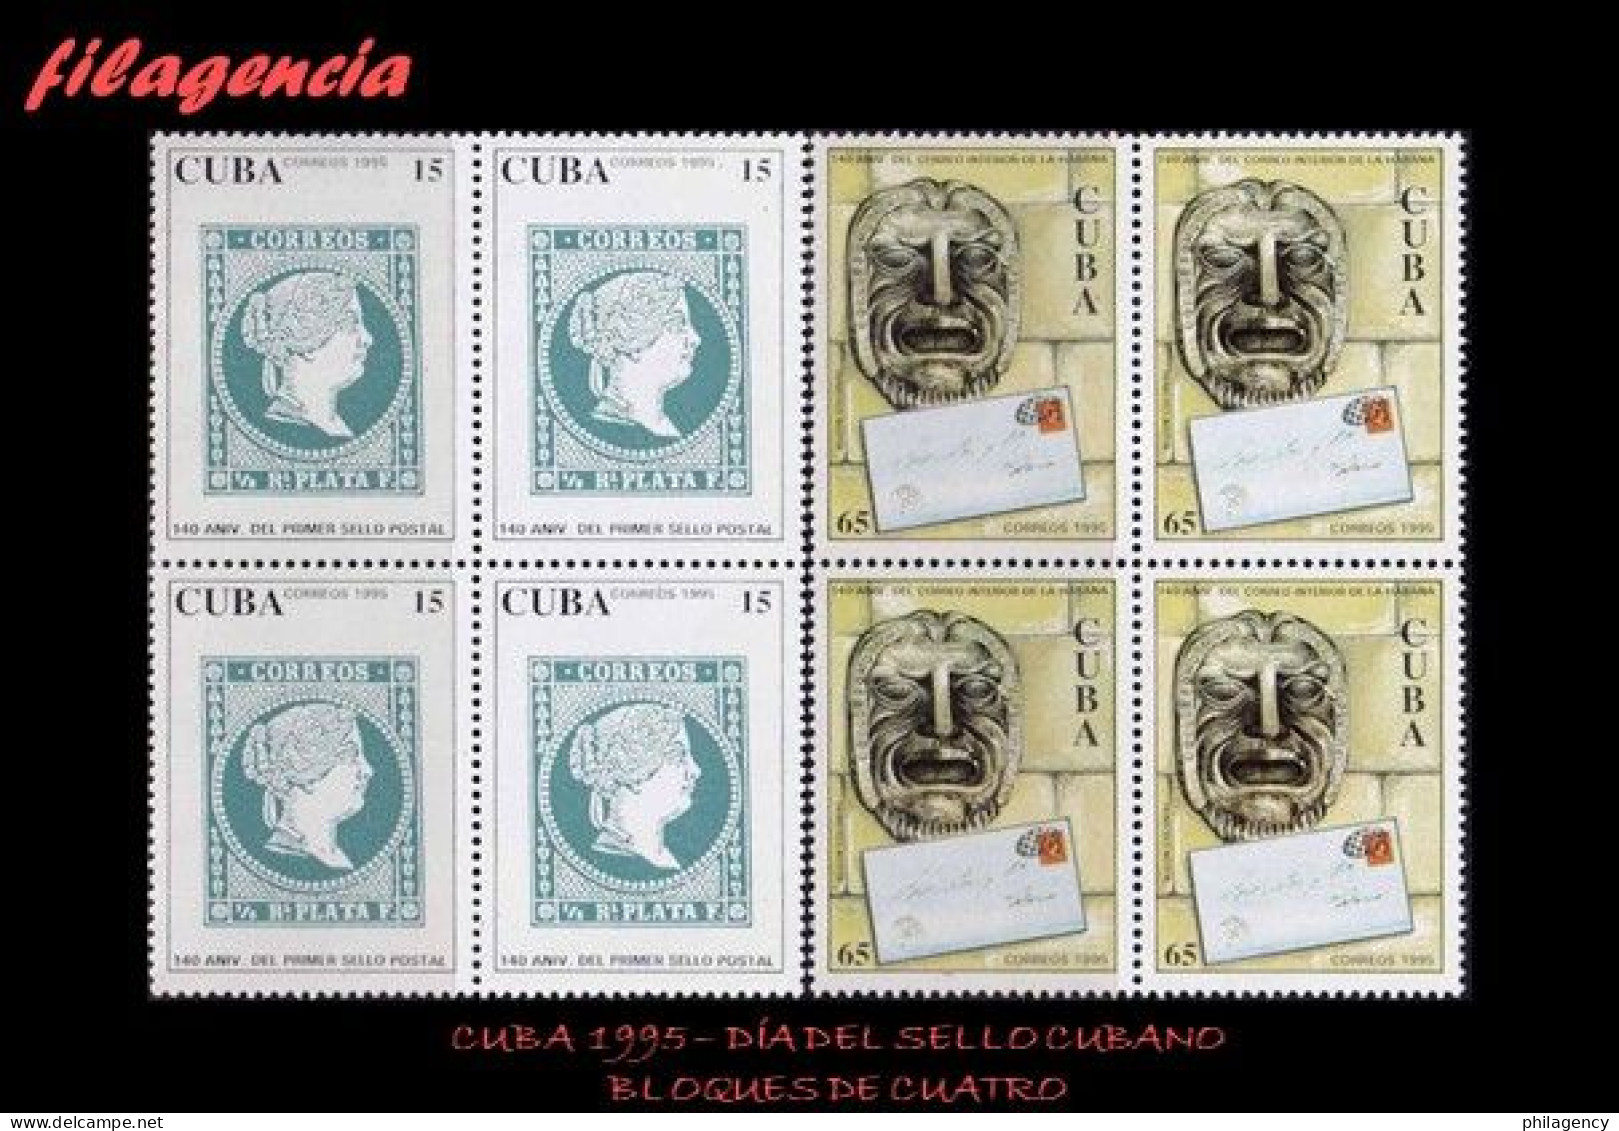 CUBA. BLOQUES DE CUATRO. 1995-05 DÍA DEL SELLO CUBANO - Unused Stamps